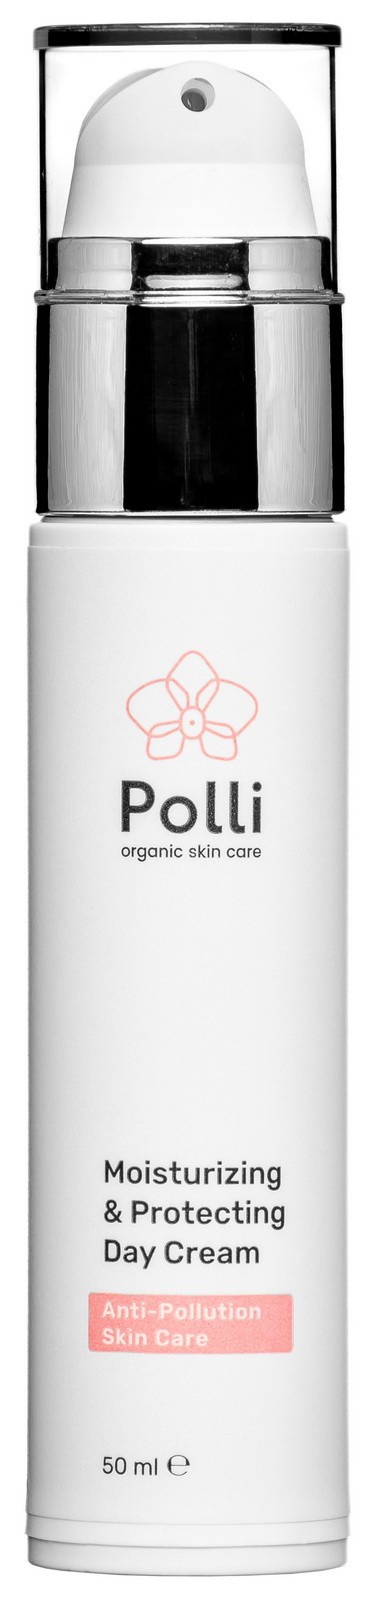 фото Крем для лица Polli Organic Skin Care защитный и увлажняющий, 50 мл